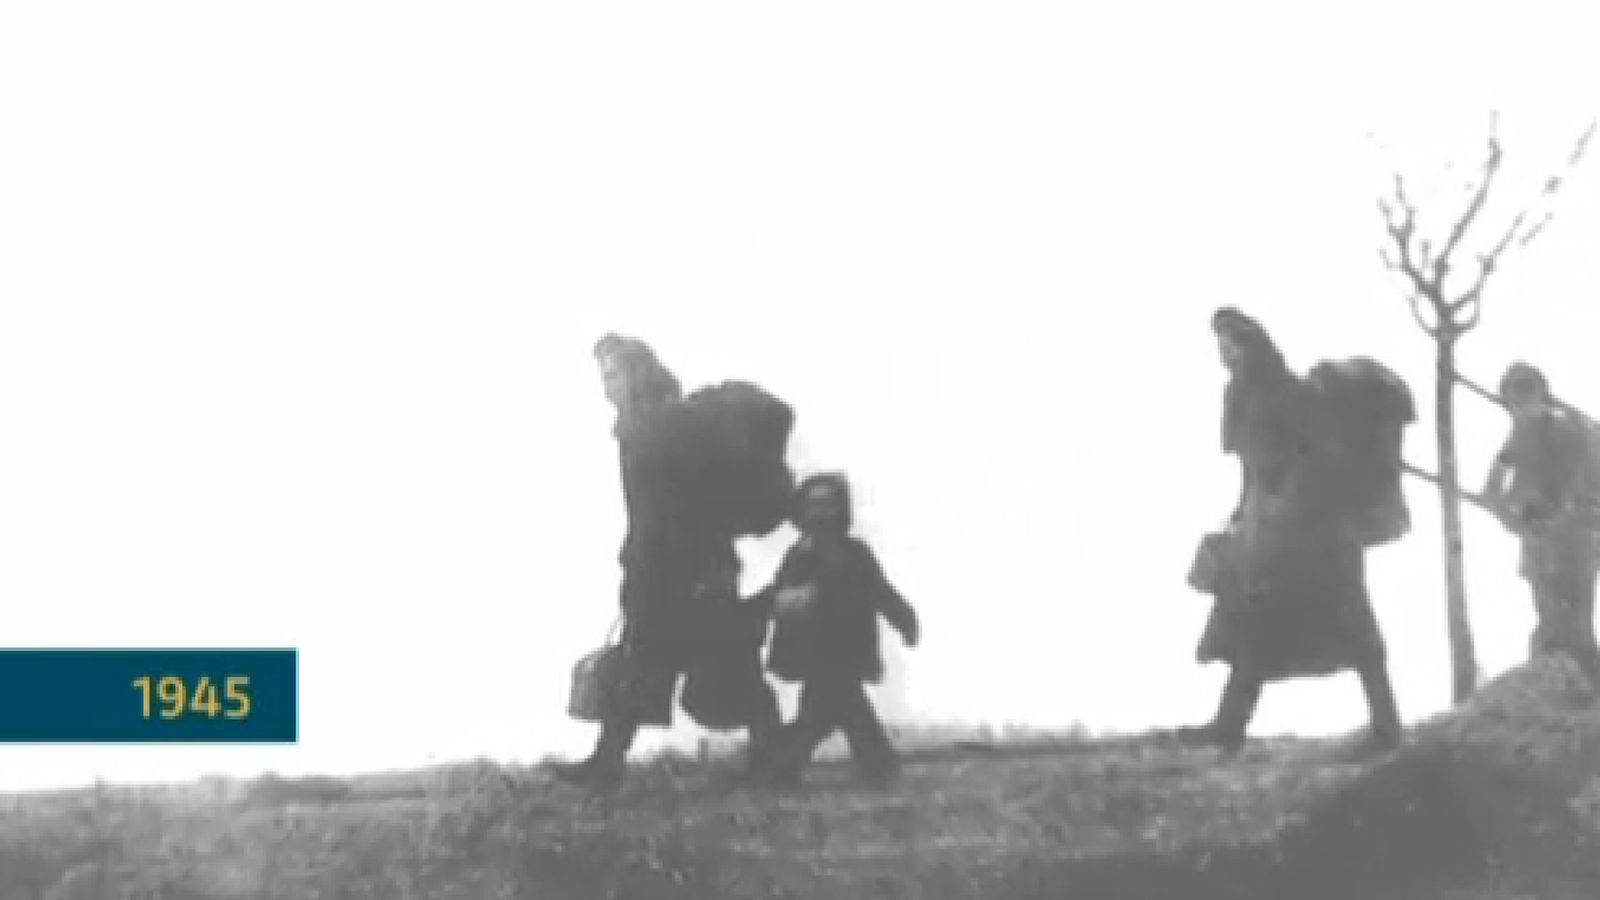 Schwarz weiß Bild von polnischen Flüchtlingen im Jahre 1945.